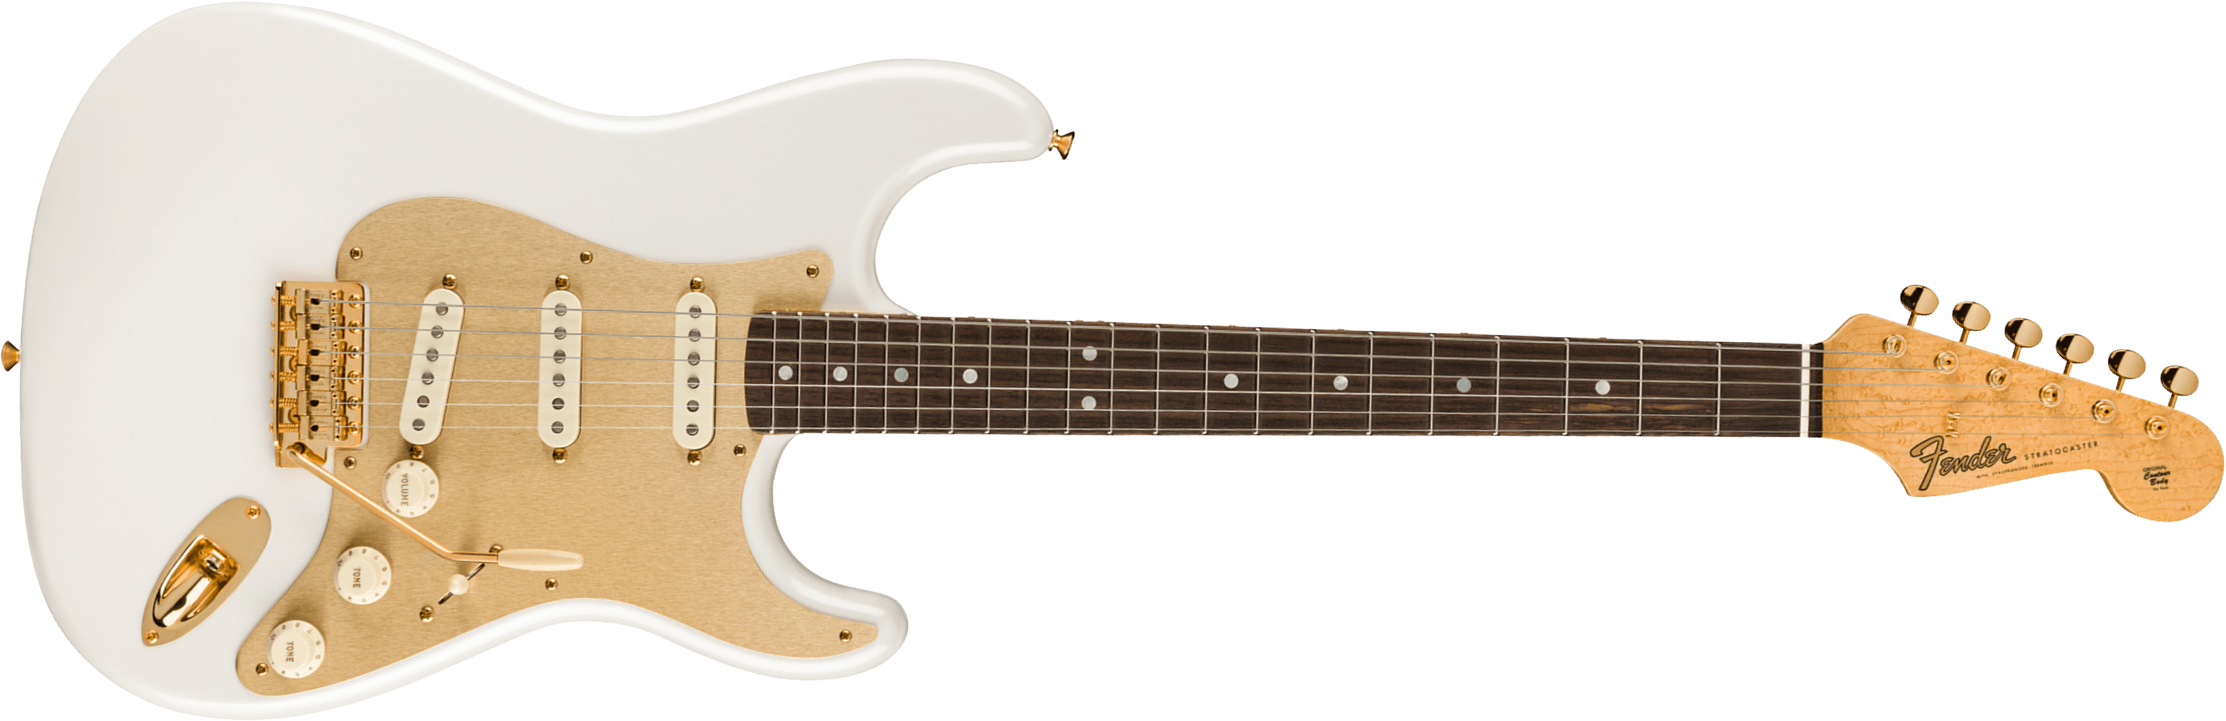 Fender Custom Shop Strat 75th Anniversary Ltd Rw - Nos Diamond White Pearl - Elektrische gitaar in Str-vorm - Main picture